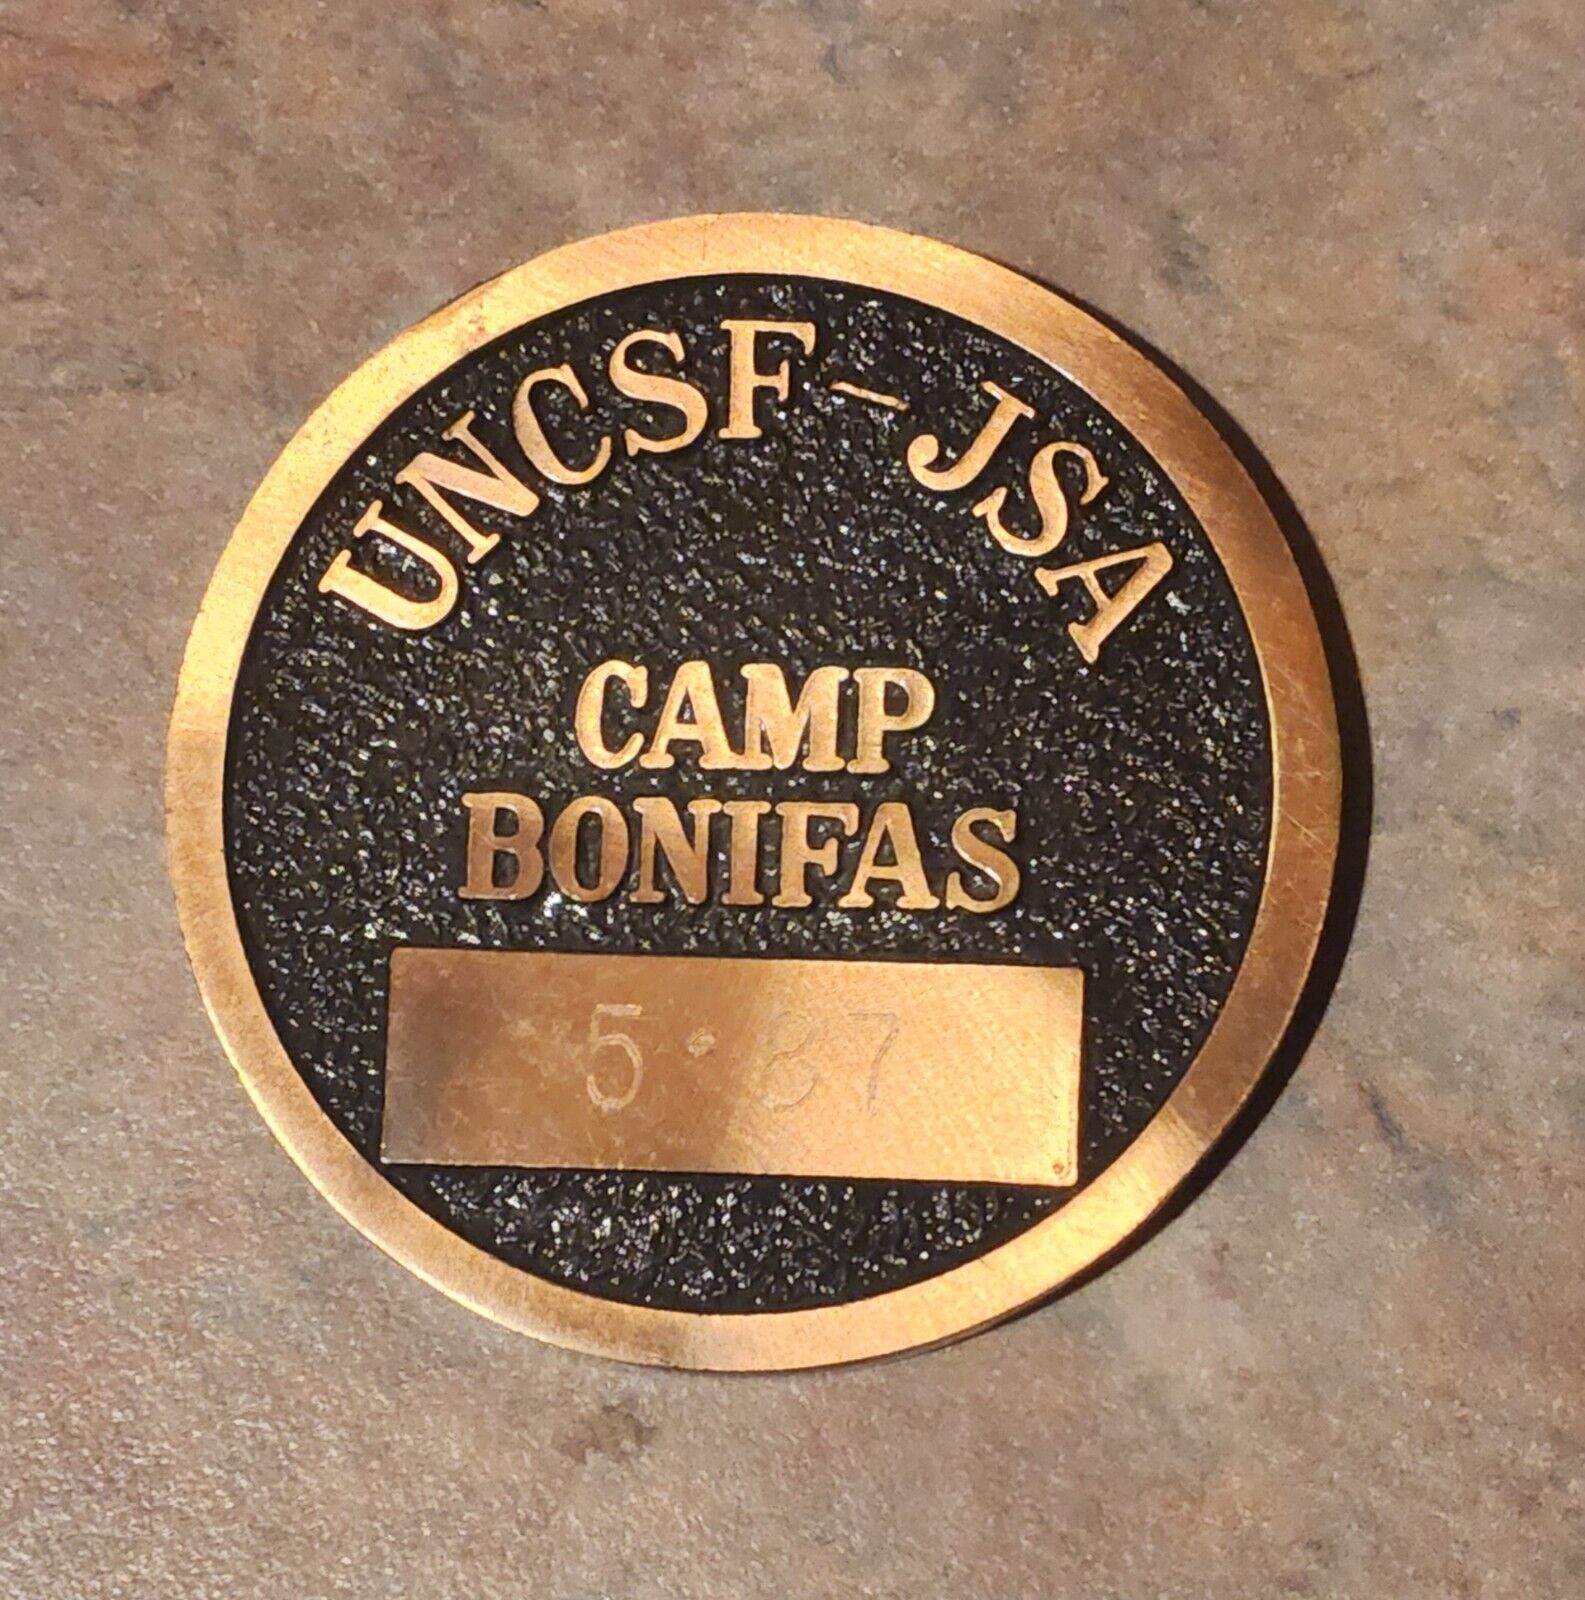 UNCSF-JSA Camp Bonifas PAN MUN JOM Korea DMZ 1.5-inch Challenge Coin